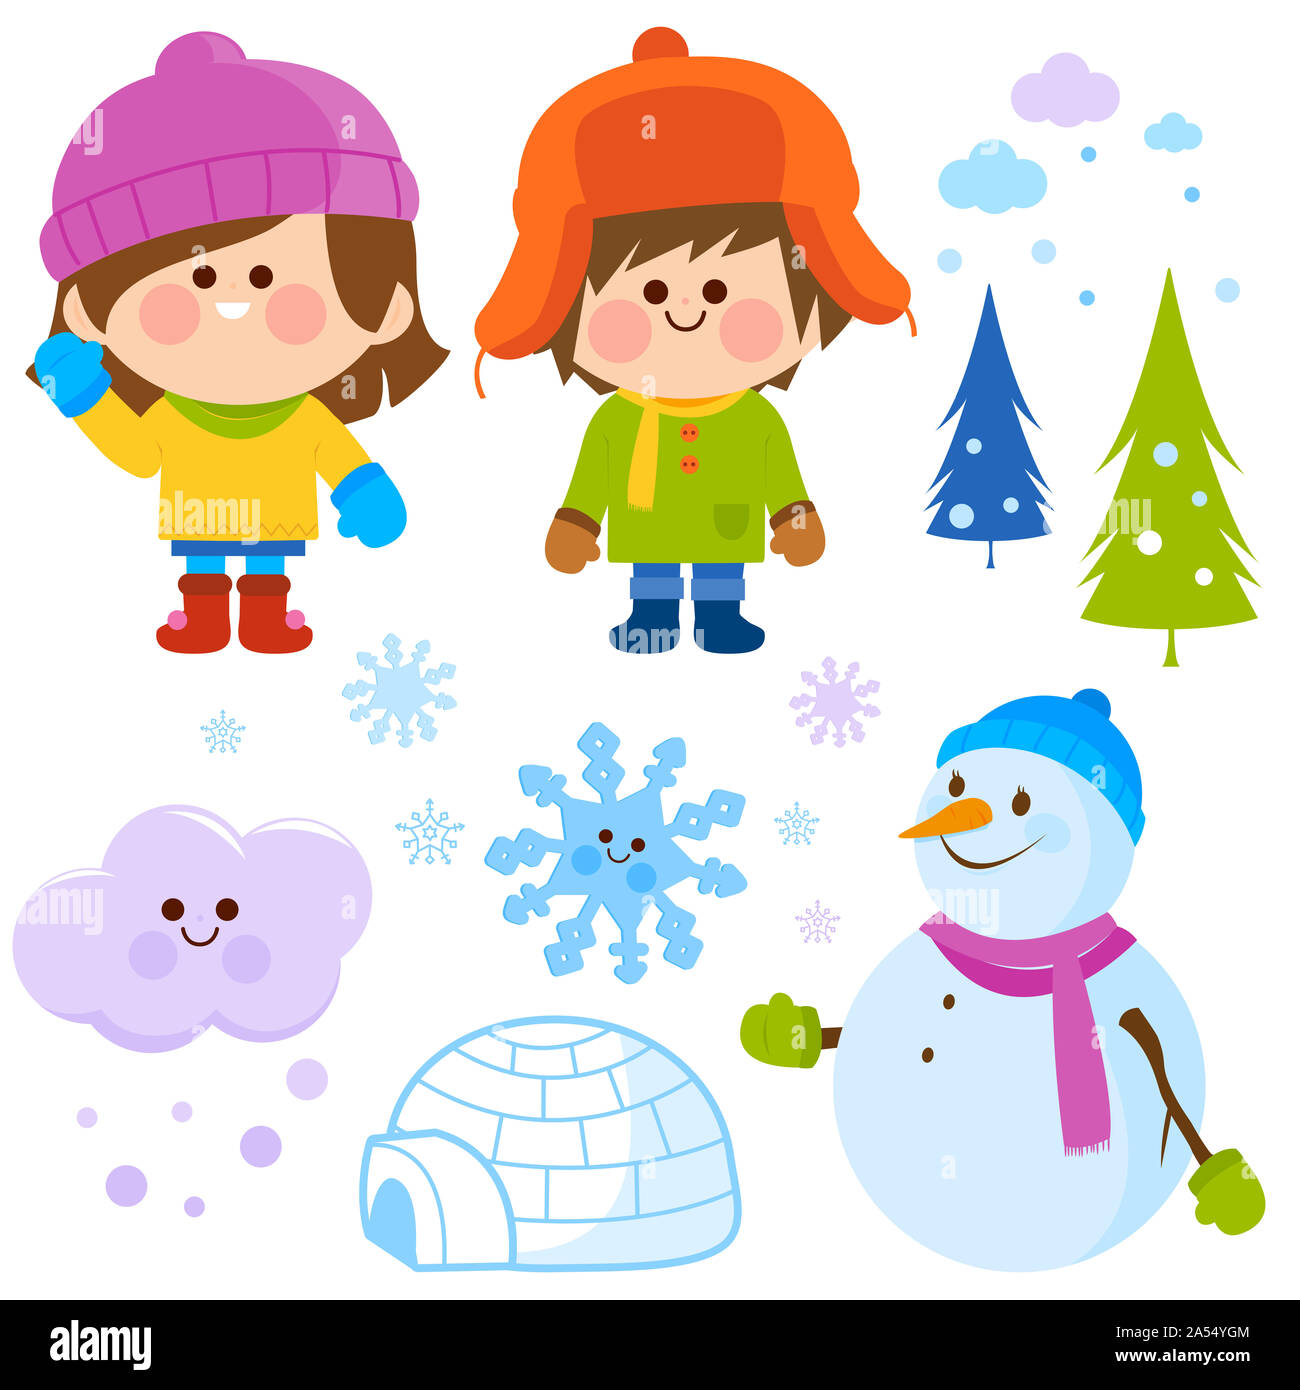 https://c8.alamy.com/compes/2a54ygm/juego-de-invierno-con-ninos-que-vestian-ropa-de-invierno-calido-muneco-de-nieve-un-iglu-y-copos-de-nieve-2a54ygm.jpg